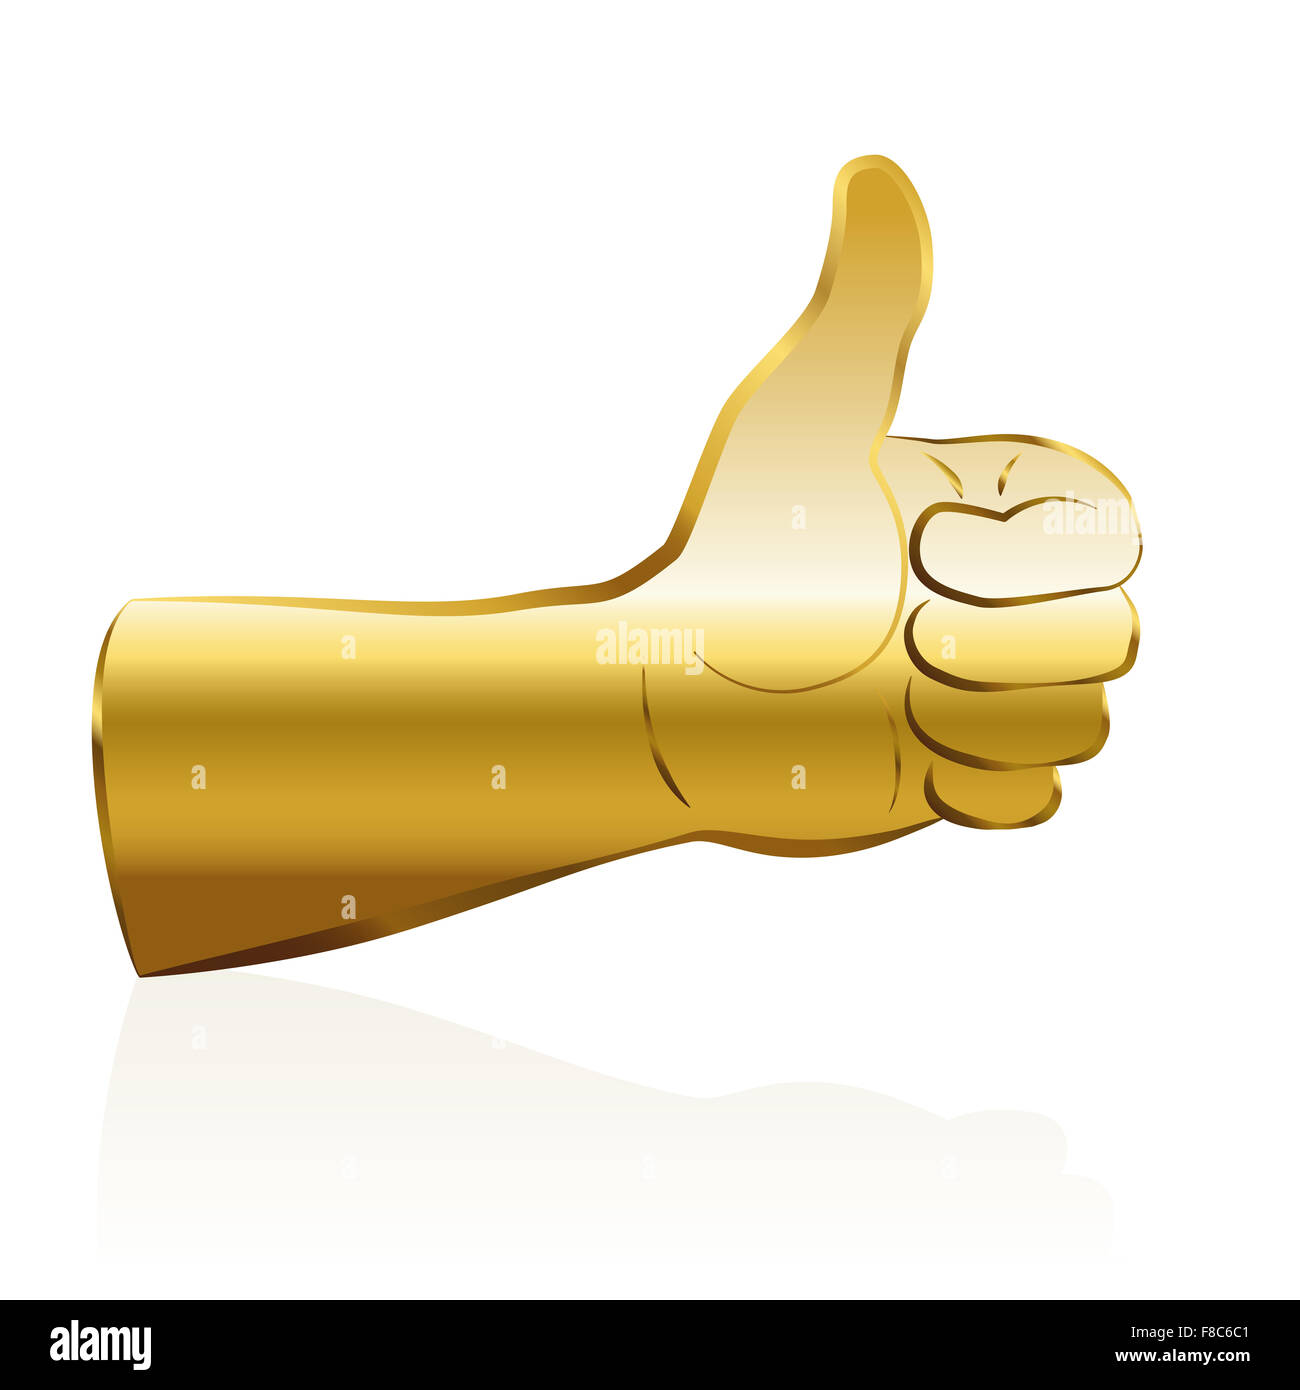 Thumbs up - couleur or, un symbole de réussite. Illustration sur fond blanc. Banque D'Images